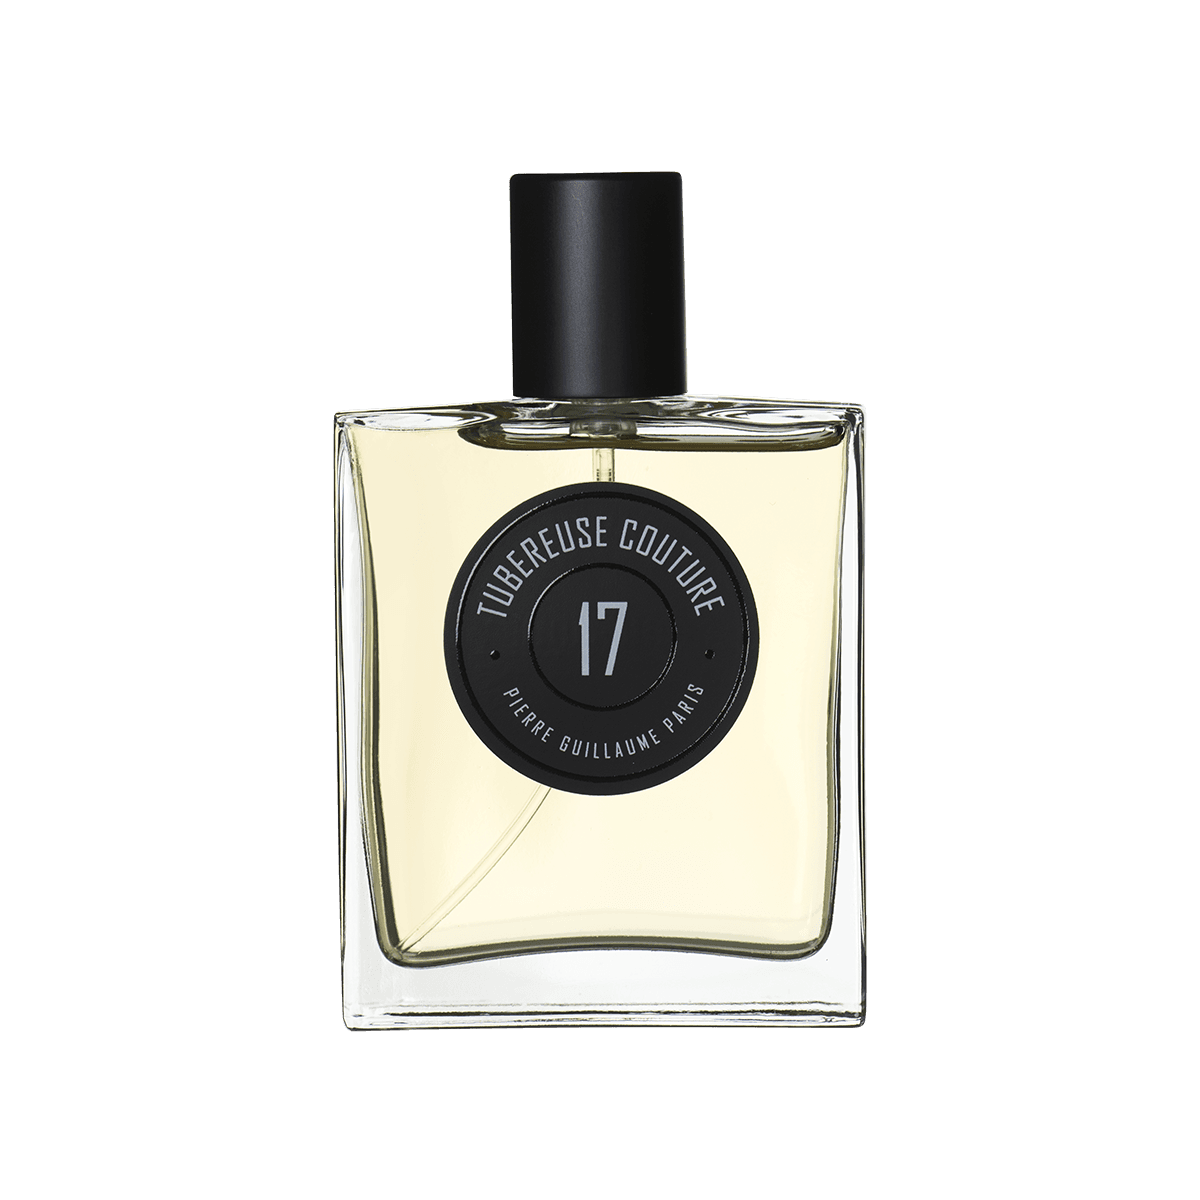 Pierre Guillaume Paris - Tubereuse Couture eau de parfum 50 ml | Perfume Lounge